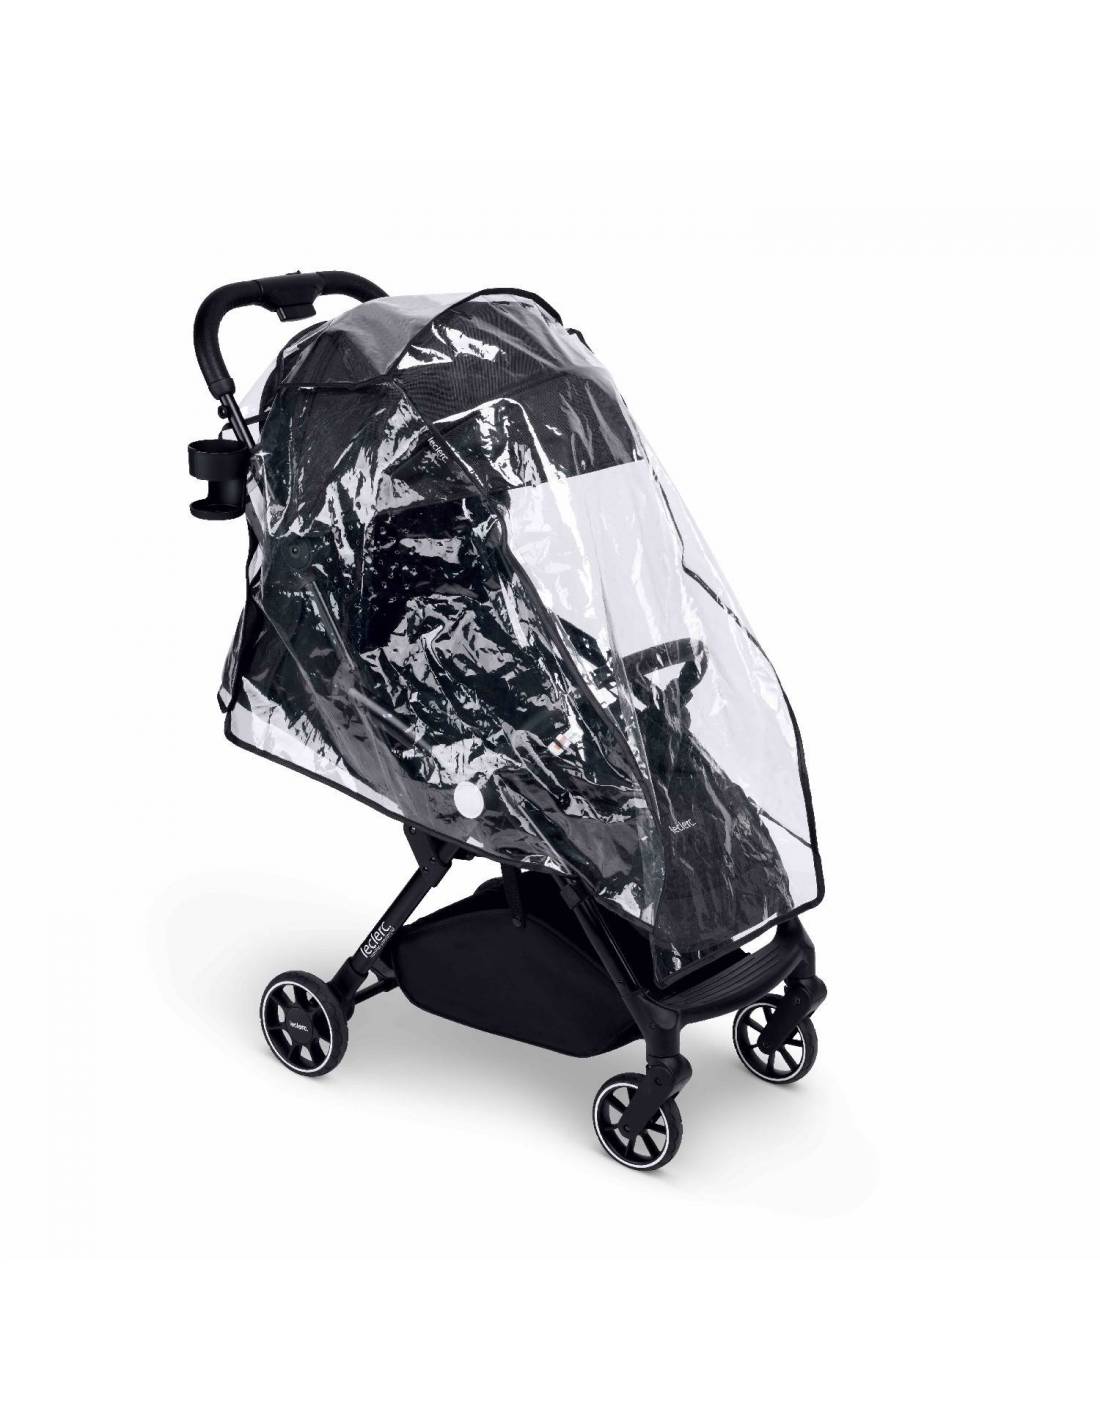 Plásticos de Lluvia para cochecitos y sillas de paseo de bebés.